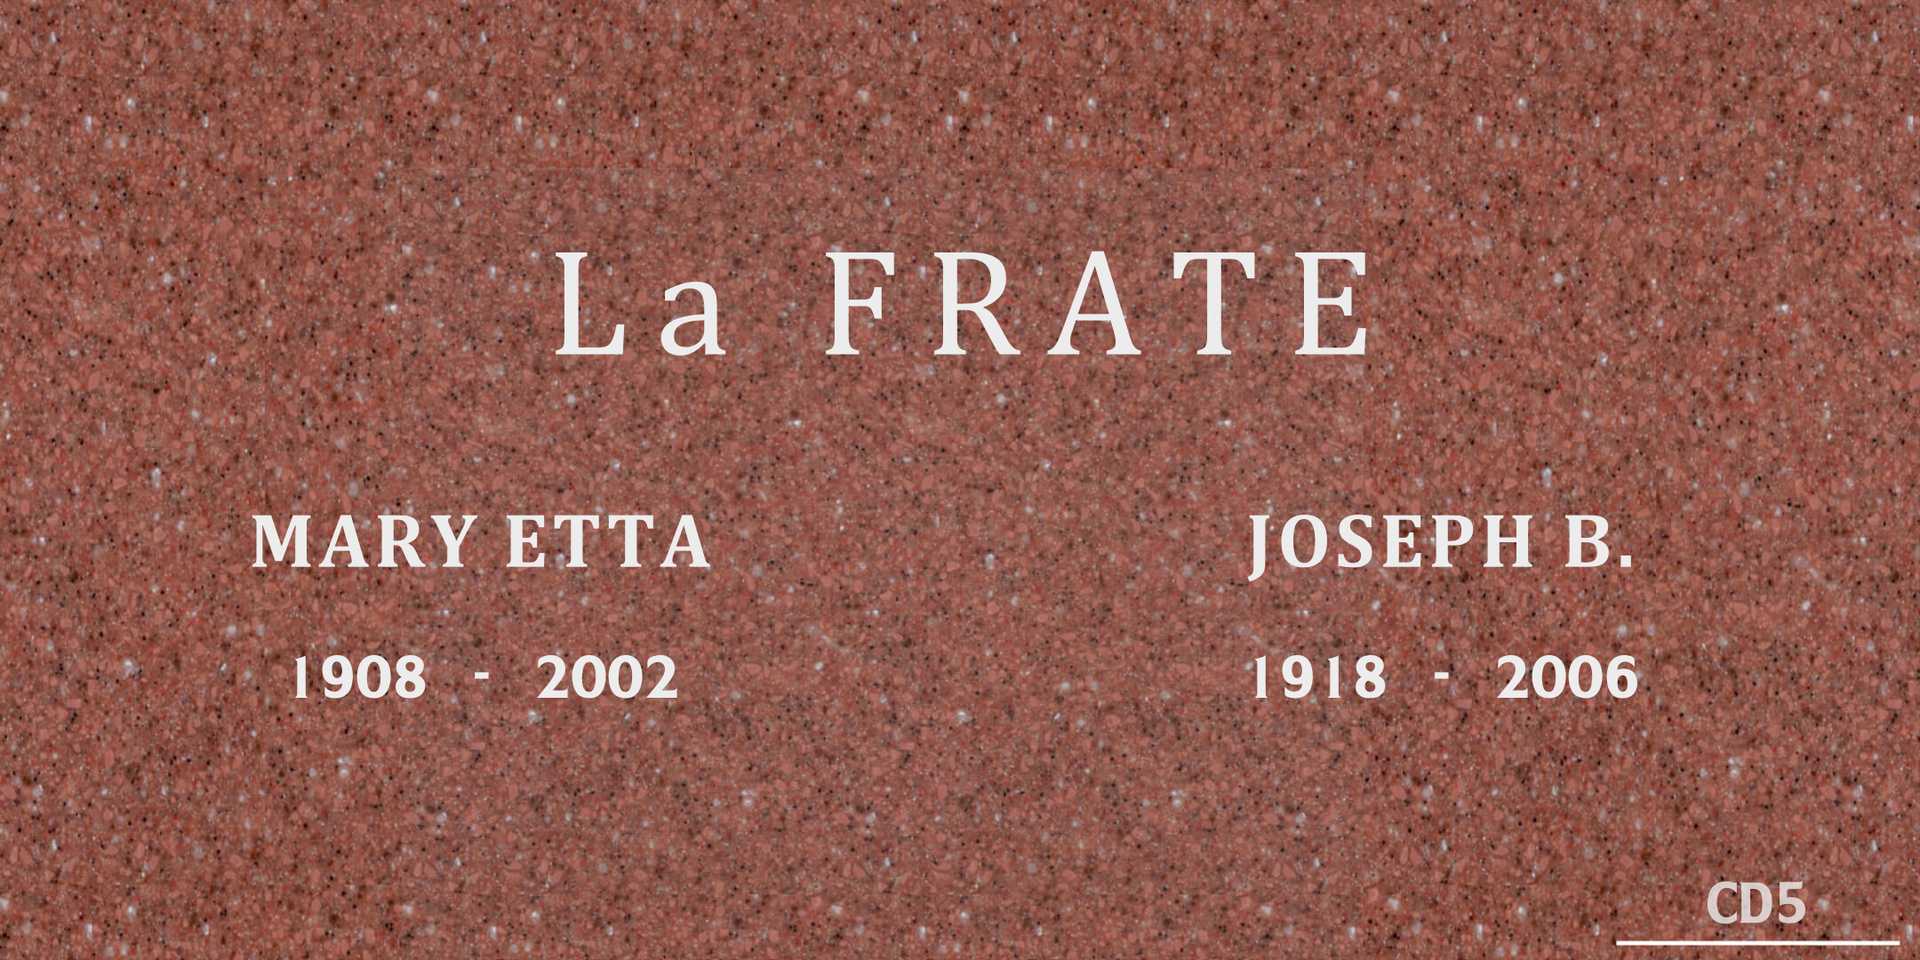 Mary Etta La Frate's grave